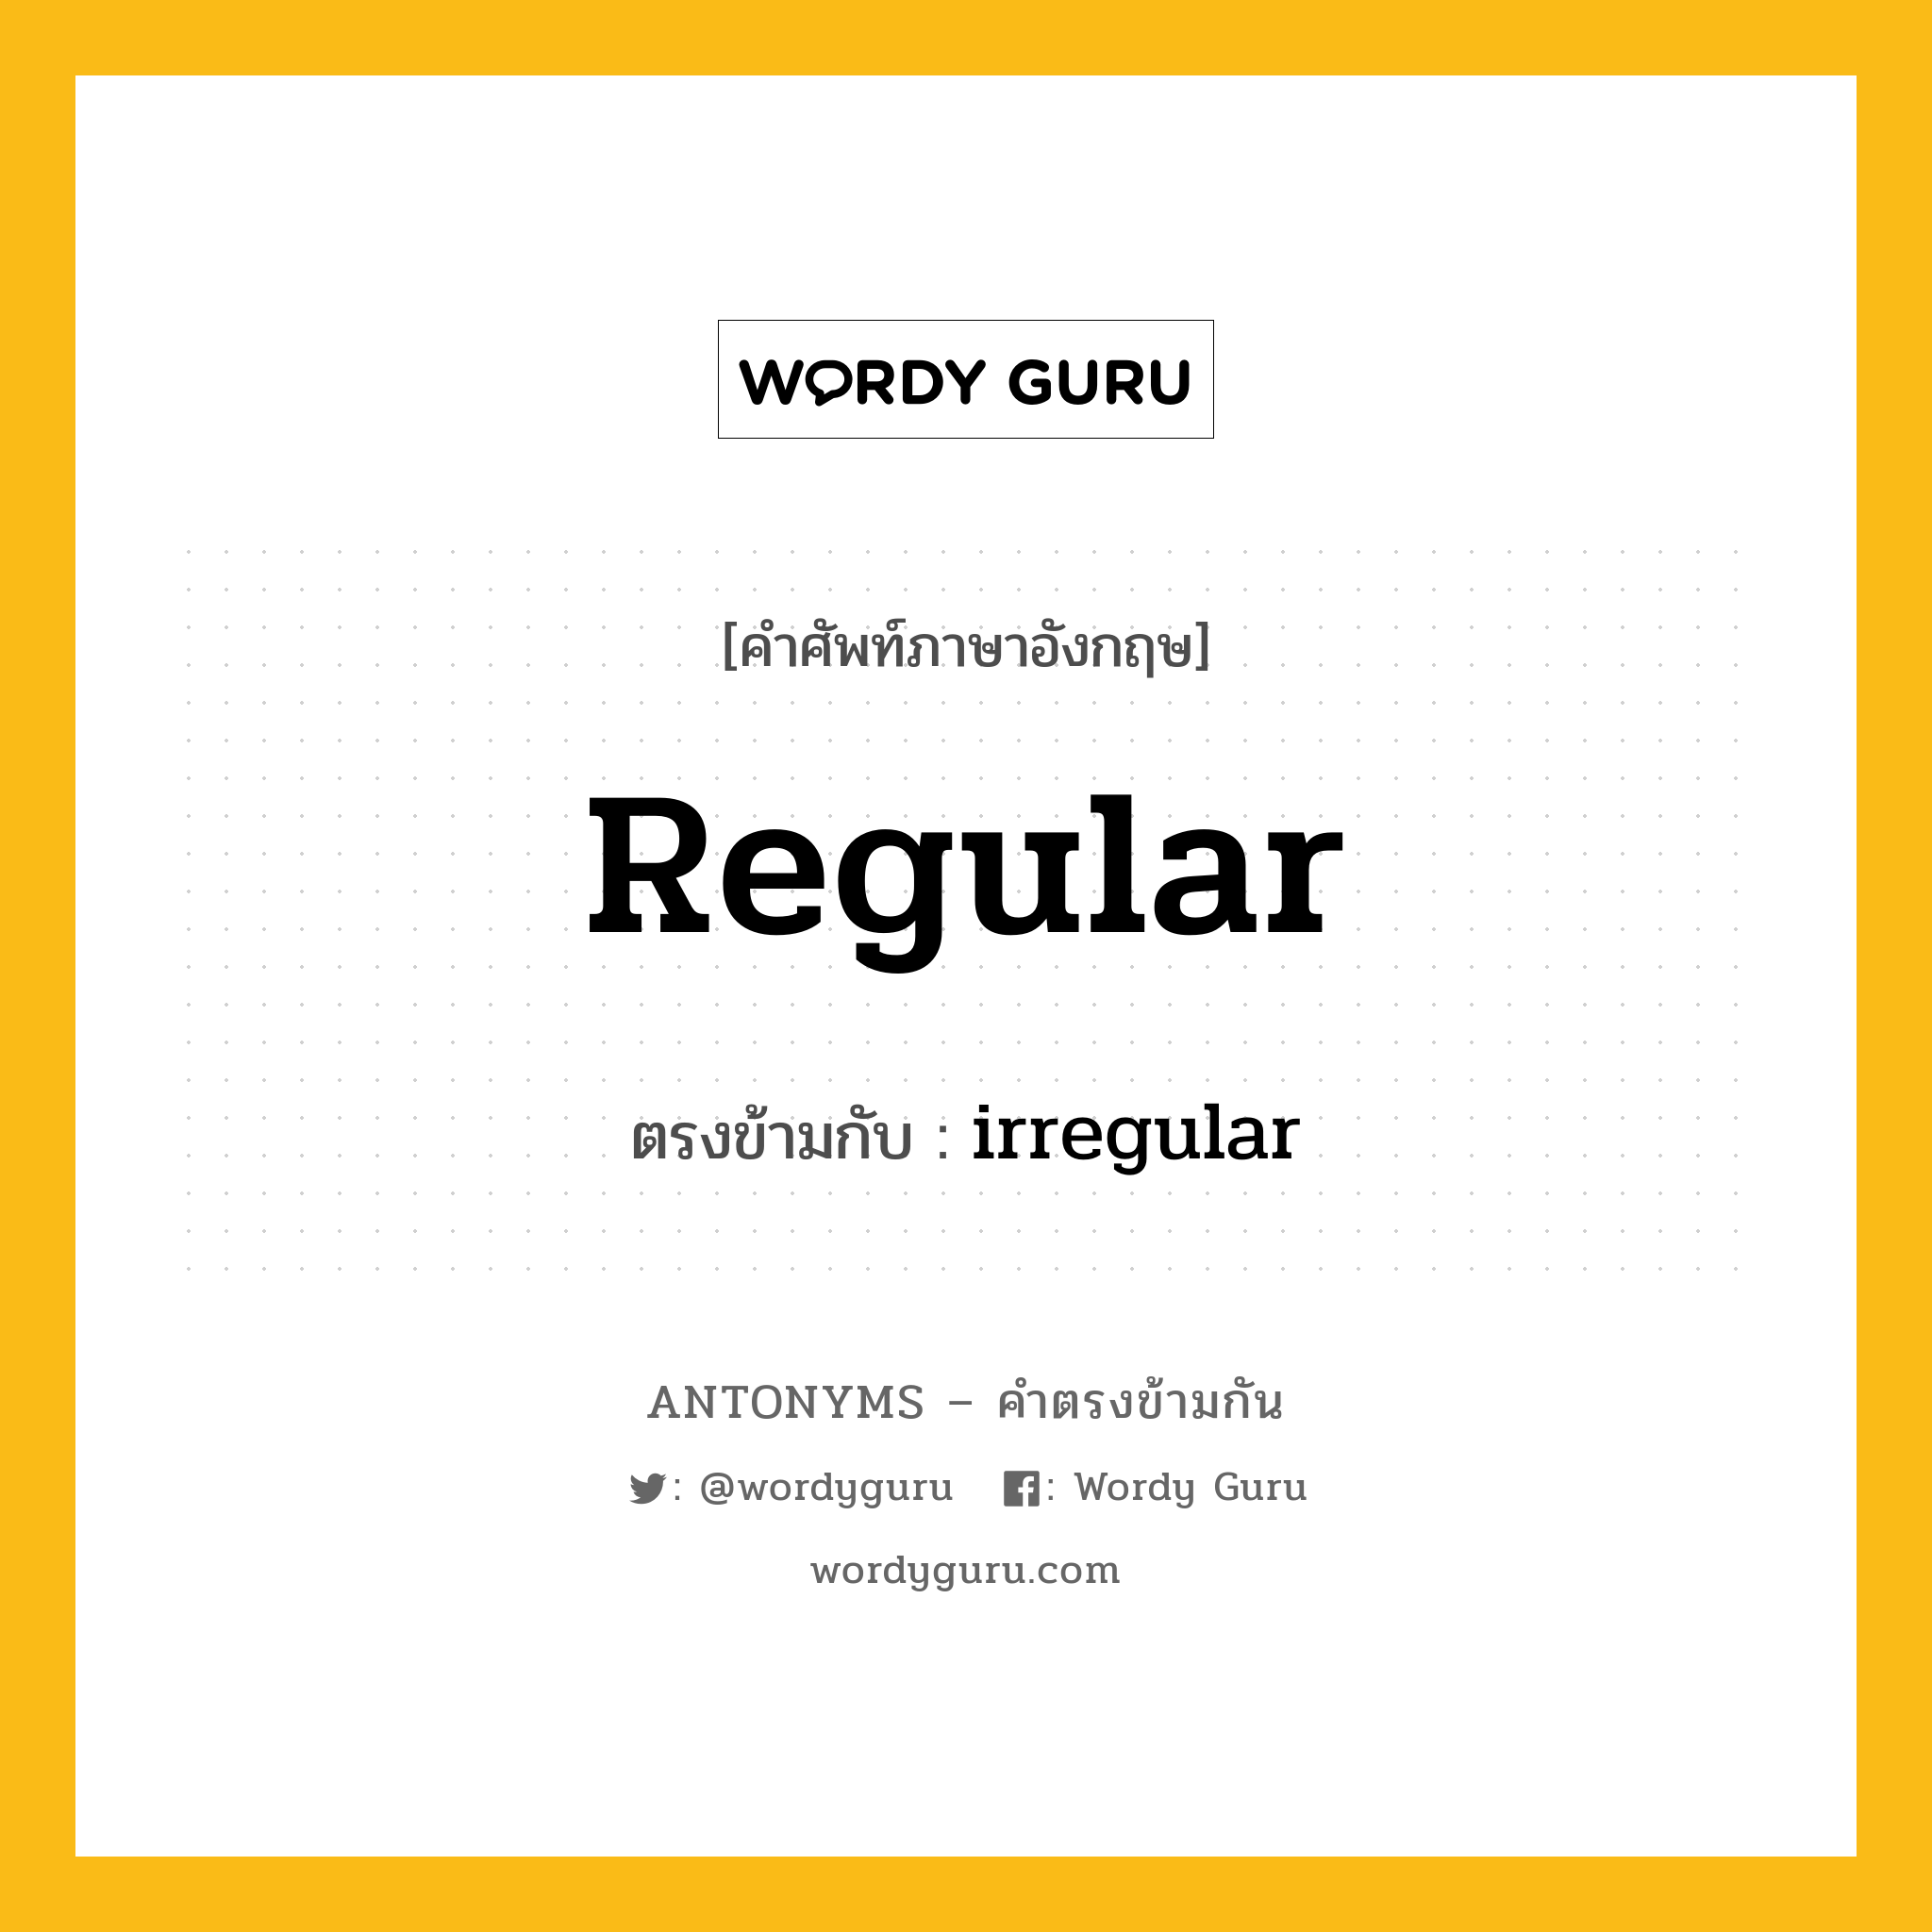 regular เป็นคำตรงข้ามกับคำไหนบ้าง?, คำศัพท์ภาษาอังกฤษ regular ตรงข้ามกับ irregular หมวด irregular